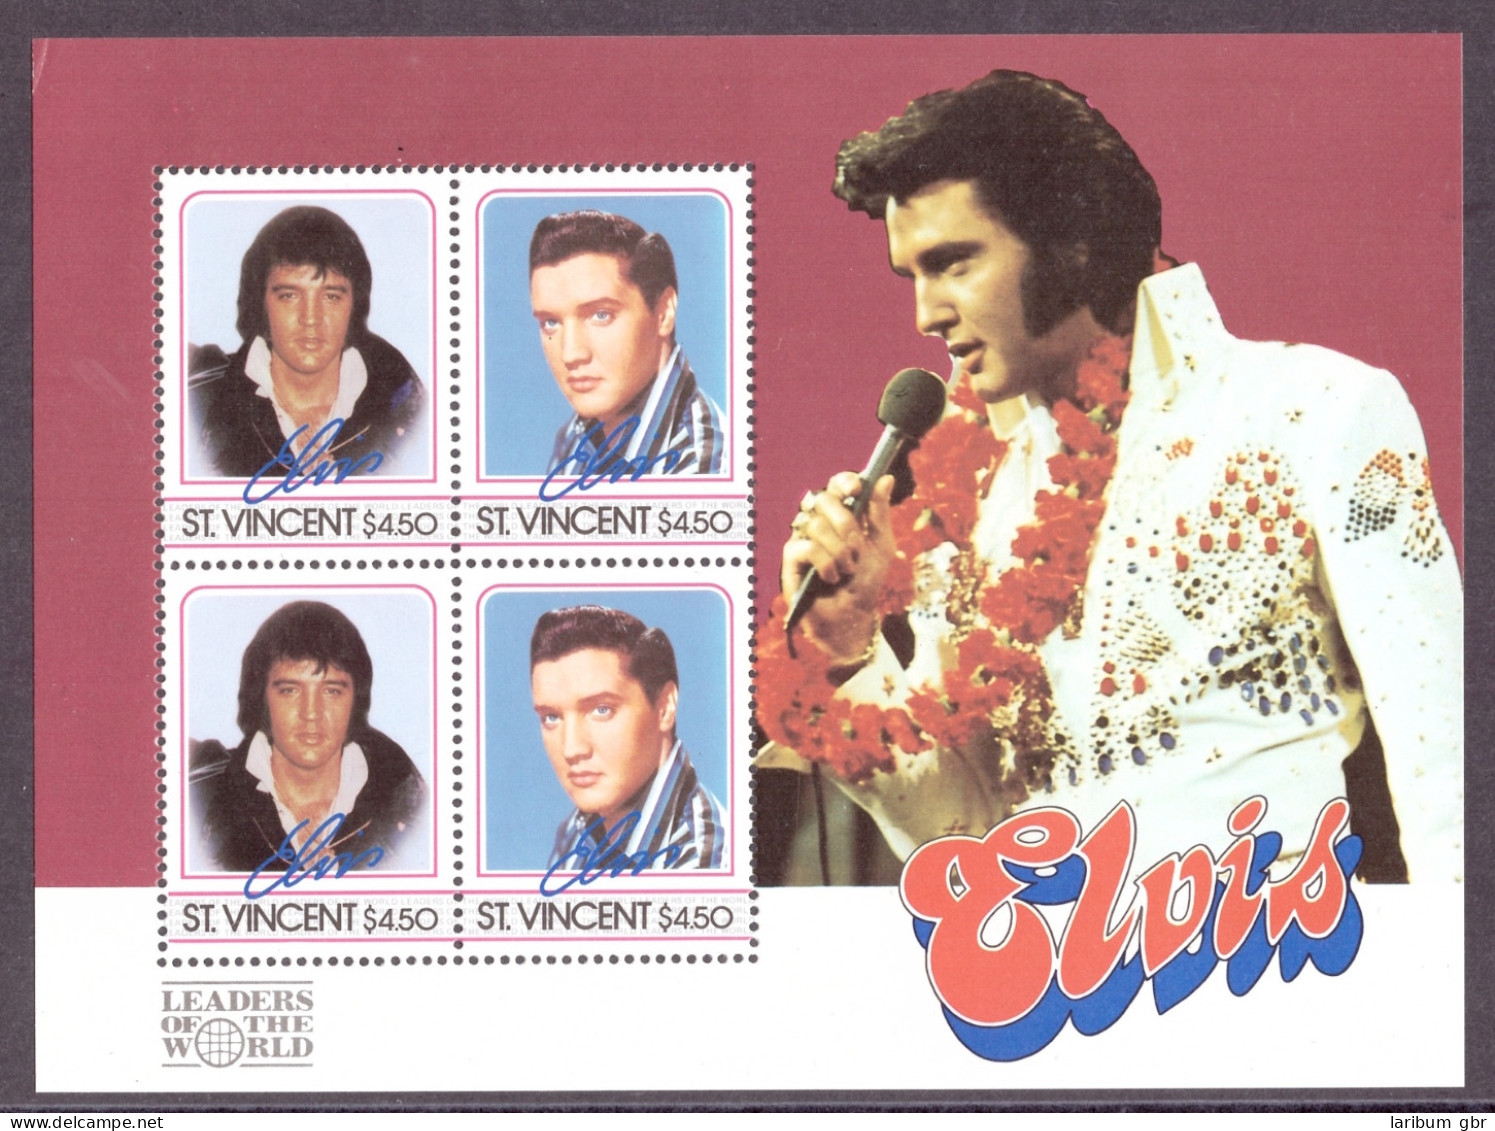 St. Vincent Block 48 Postfrisch Elvis Presley #IN222 - St.Vincent Y Las Granadinas